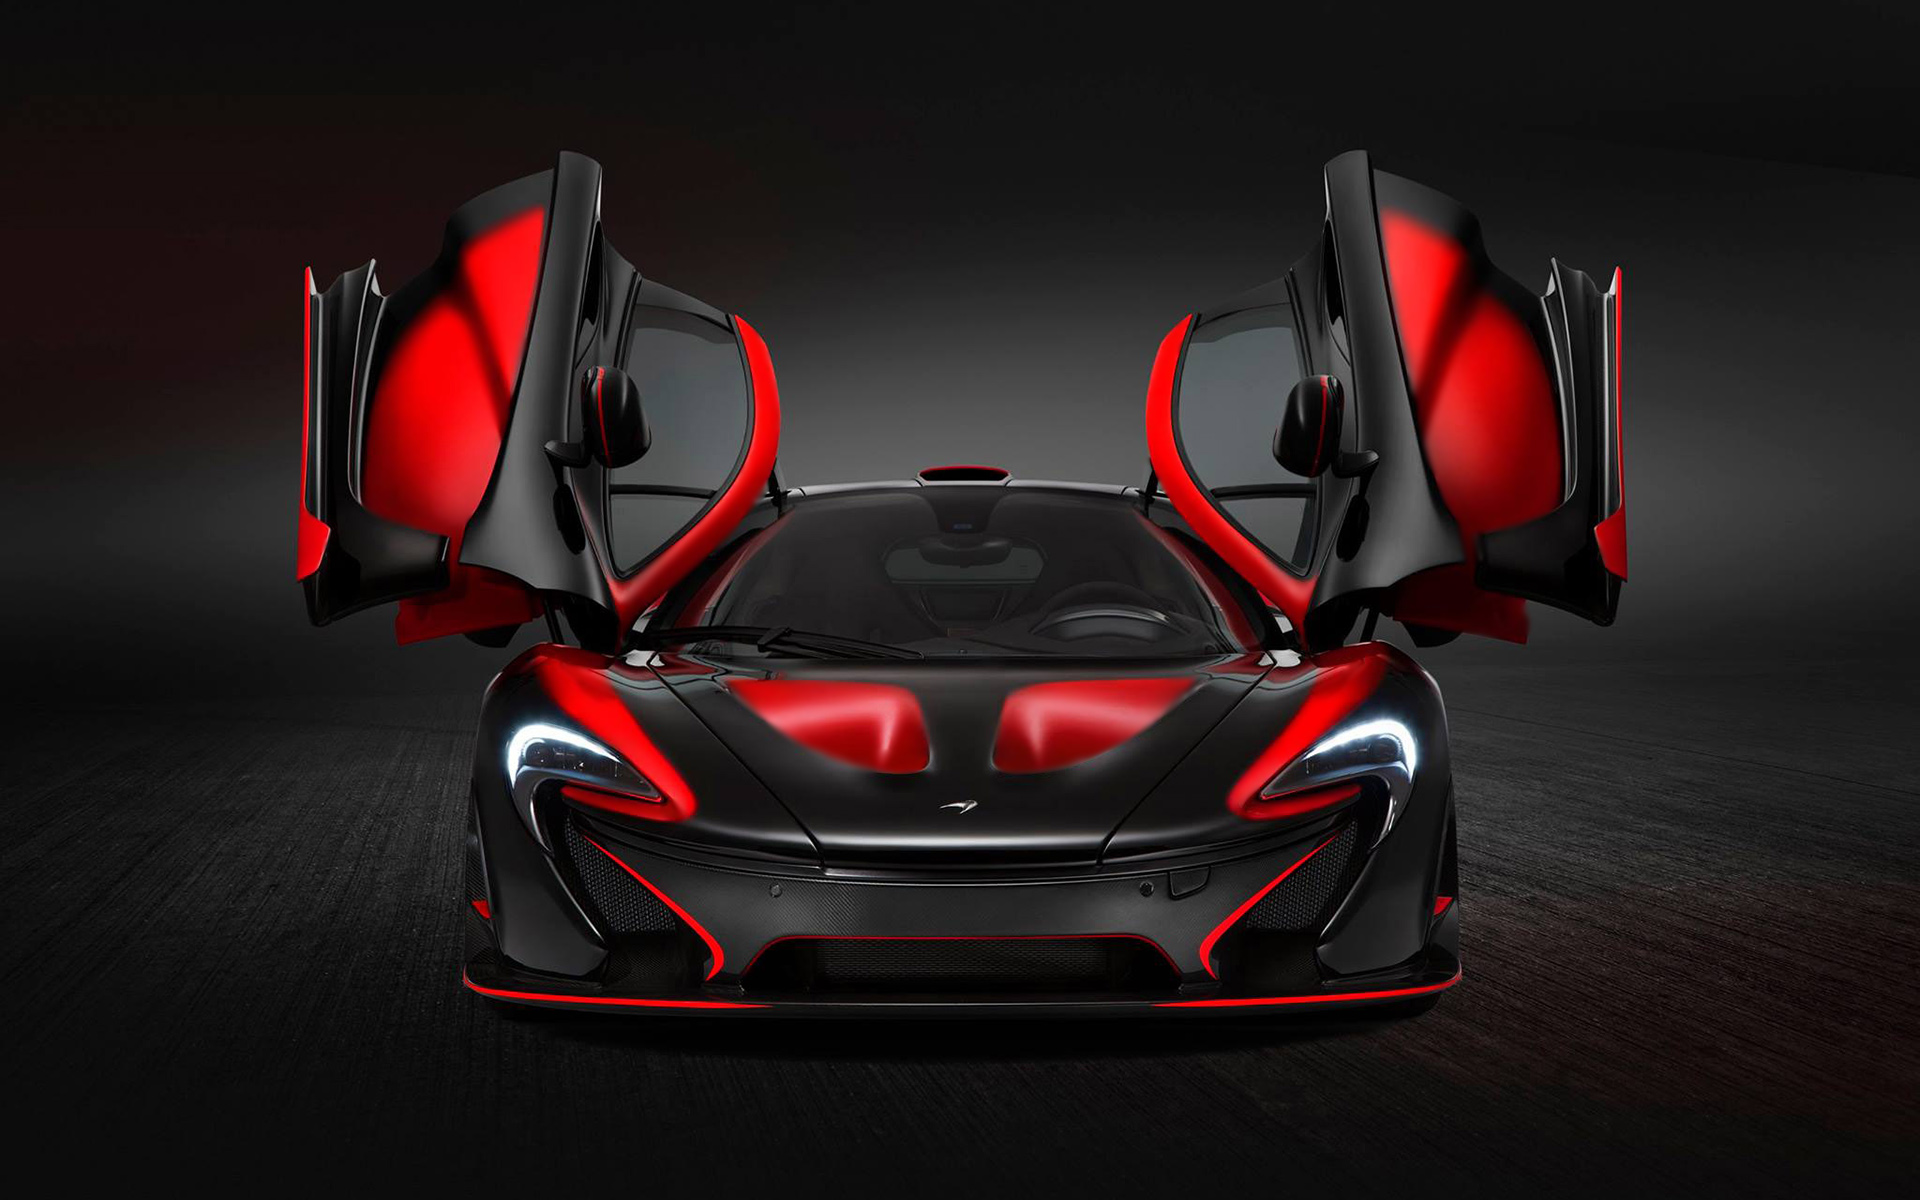 McLaren Red and Black Car Desktop Wallpaper - DreamLoveWallpapers